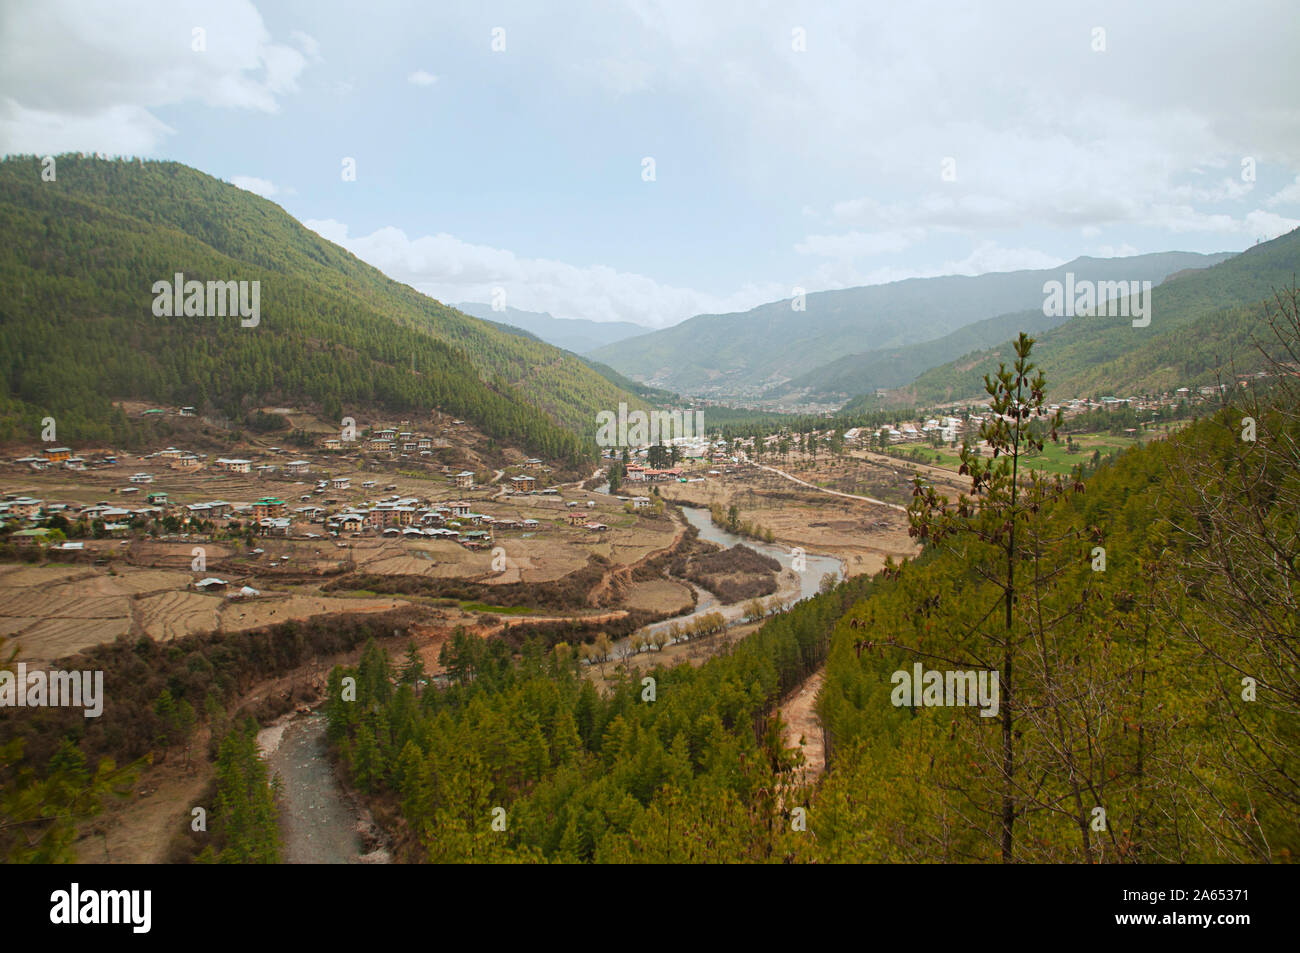 A beautiful landscape at Thimpu, Bhutan Stock Photo